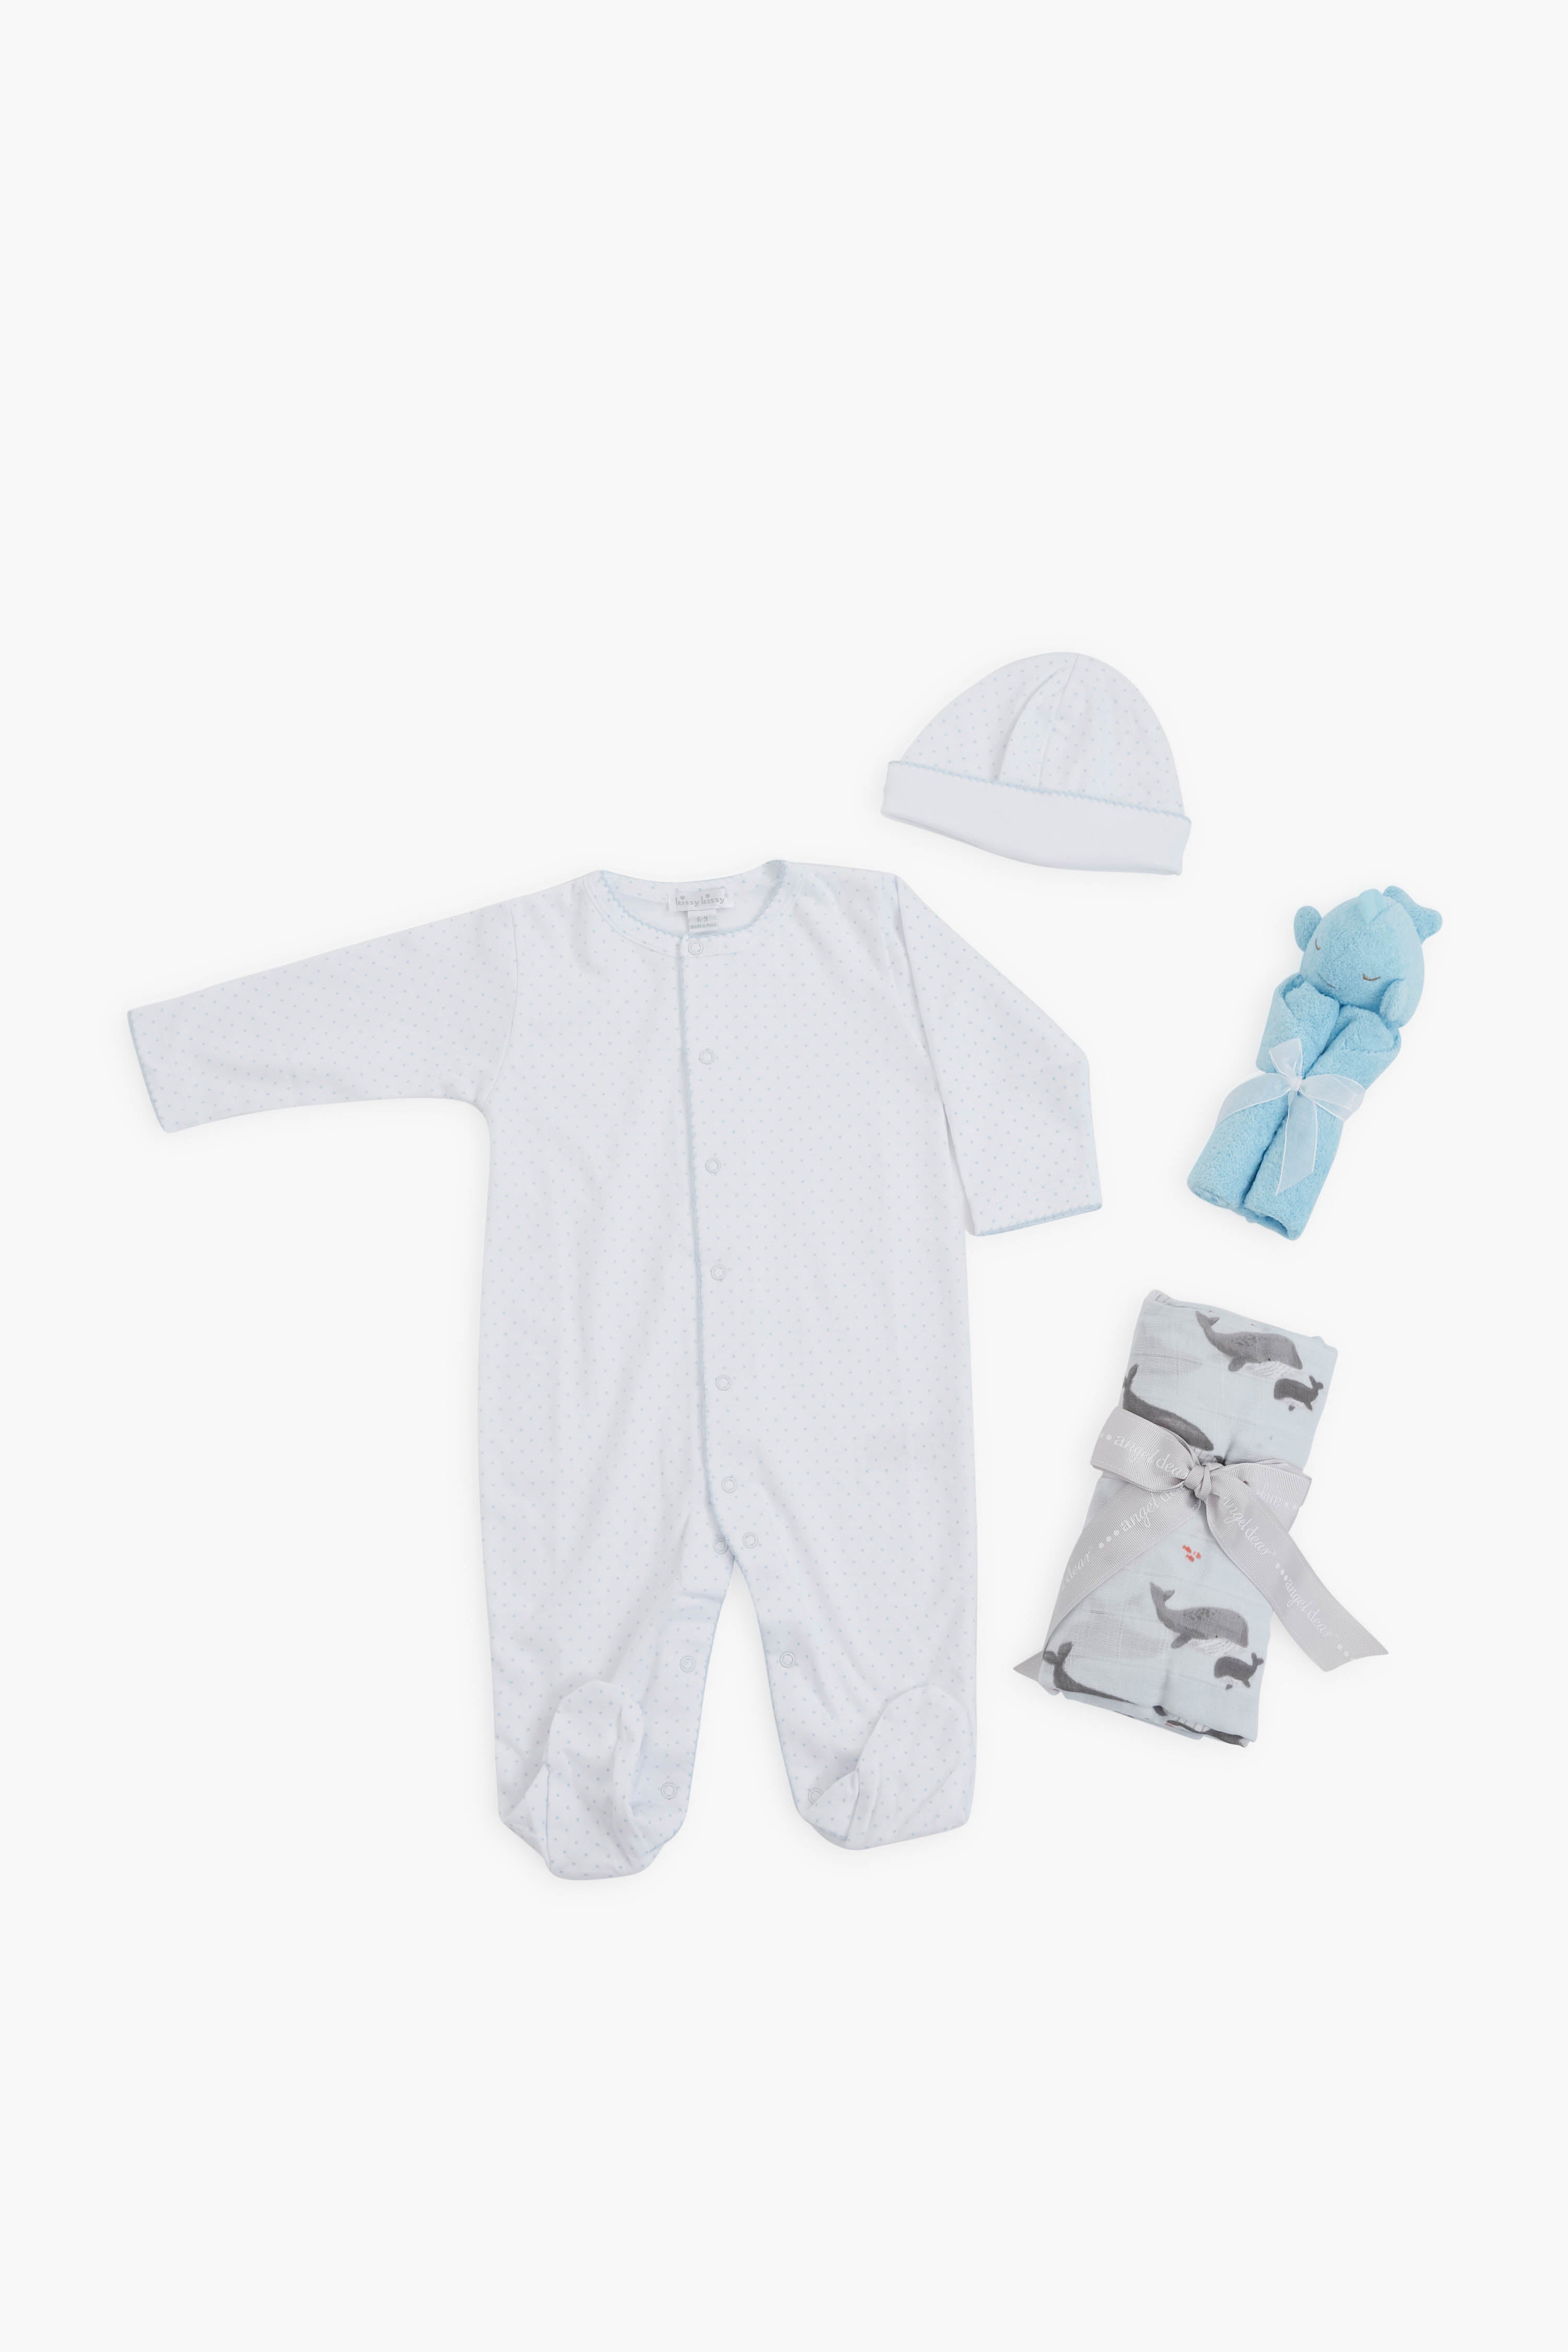 Baby Boy Gift Bundle | Tuckernuck Tots